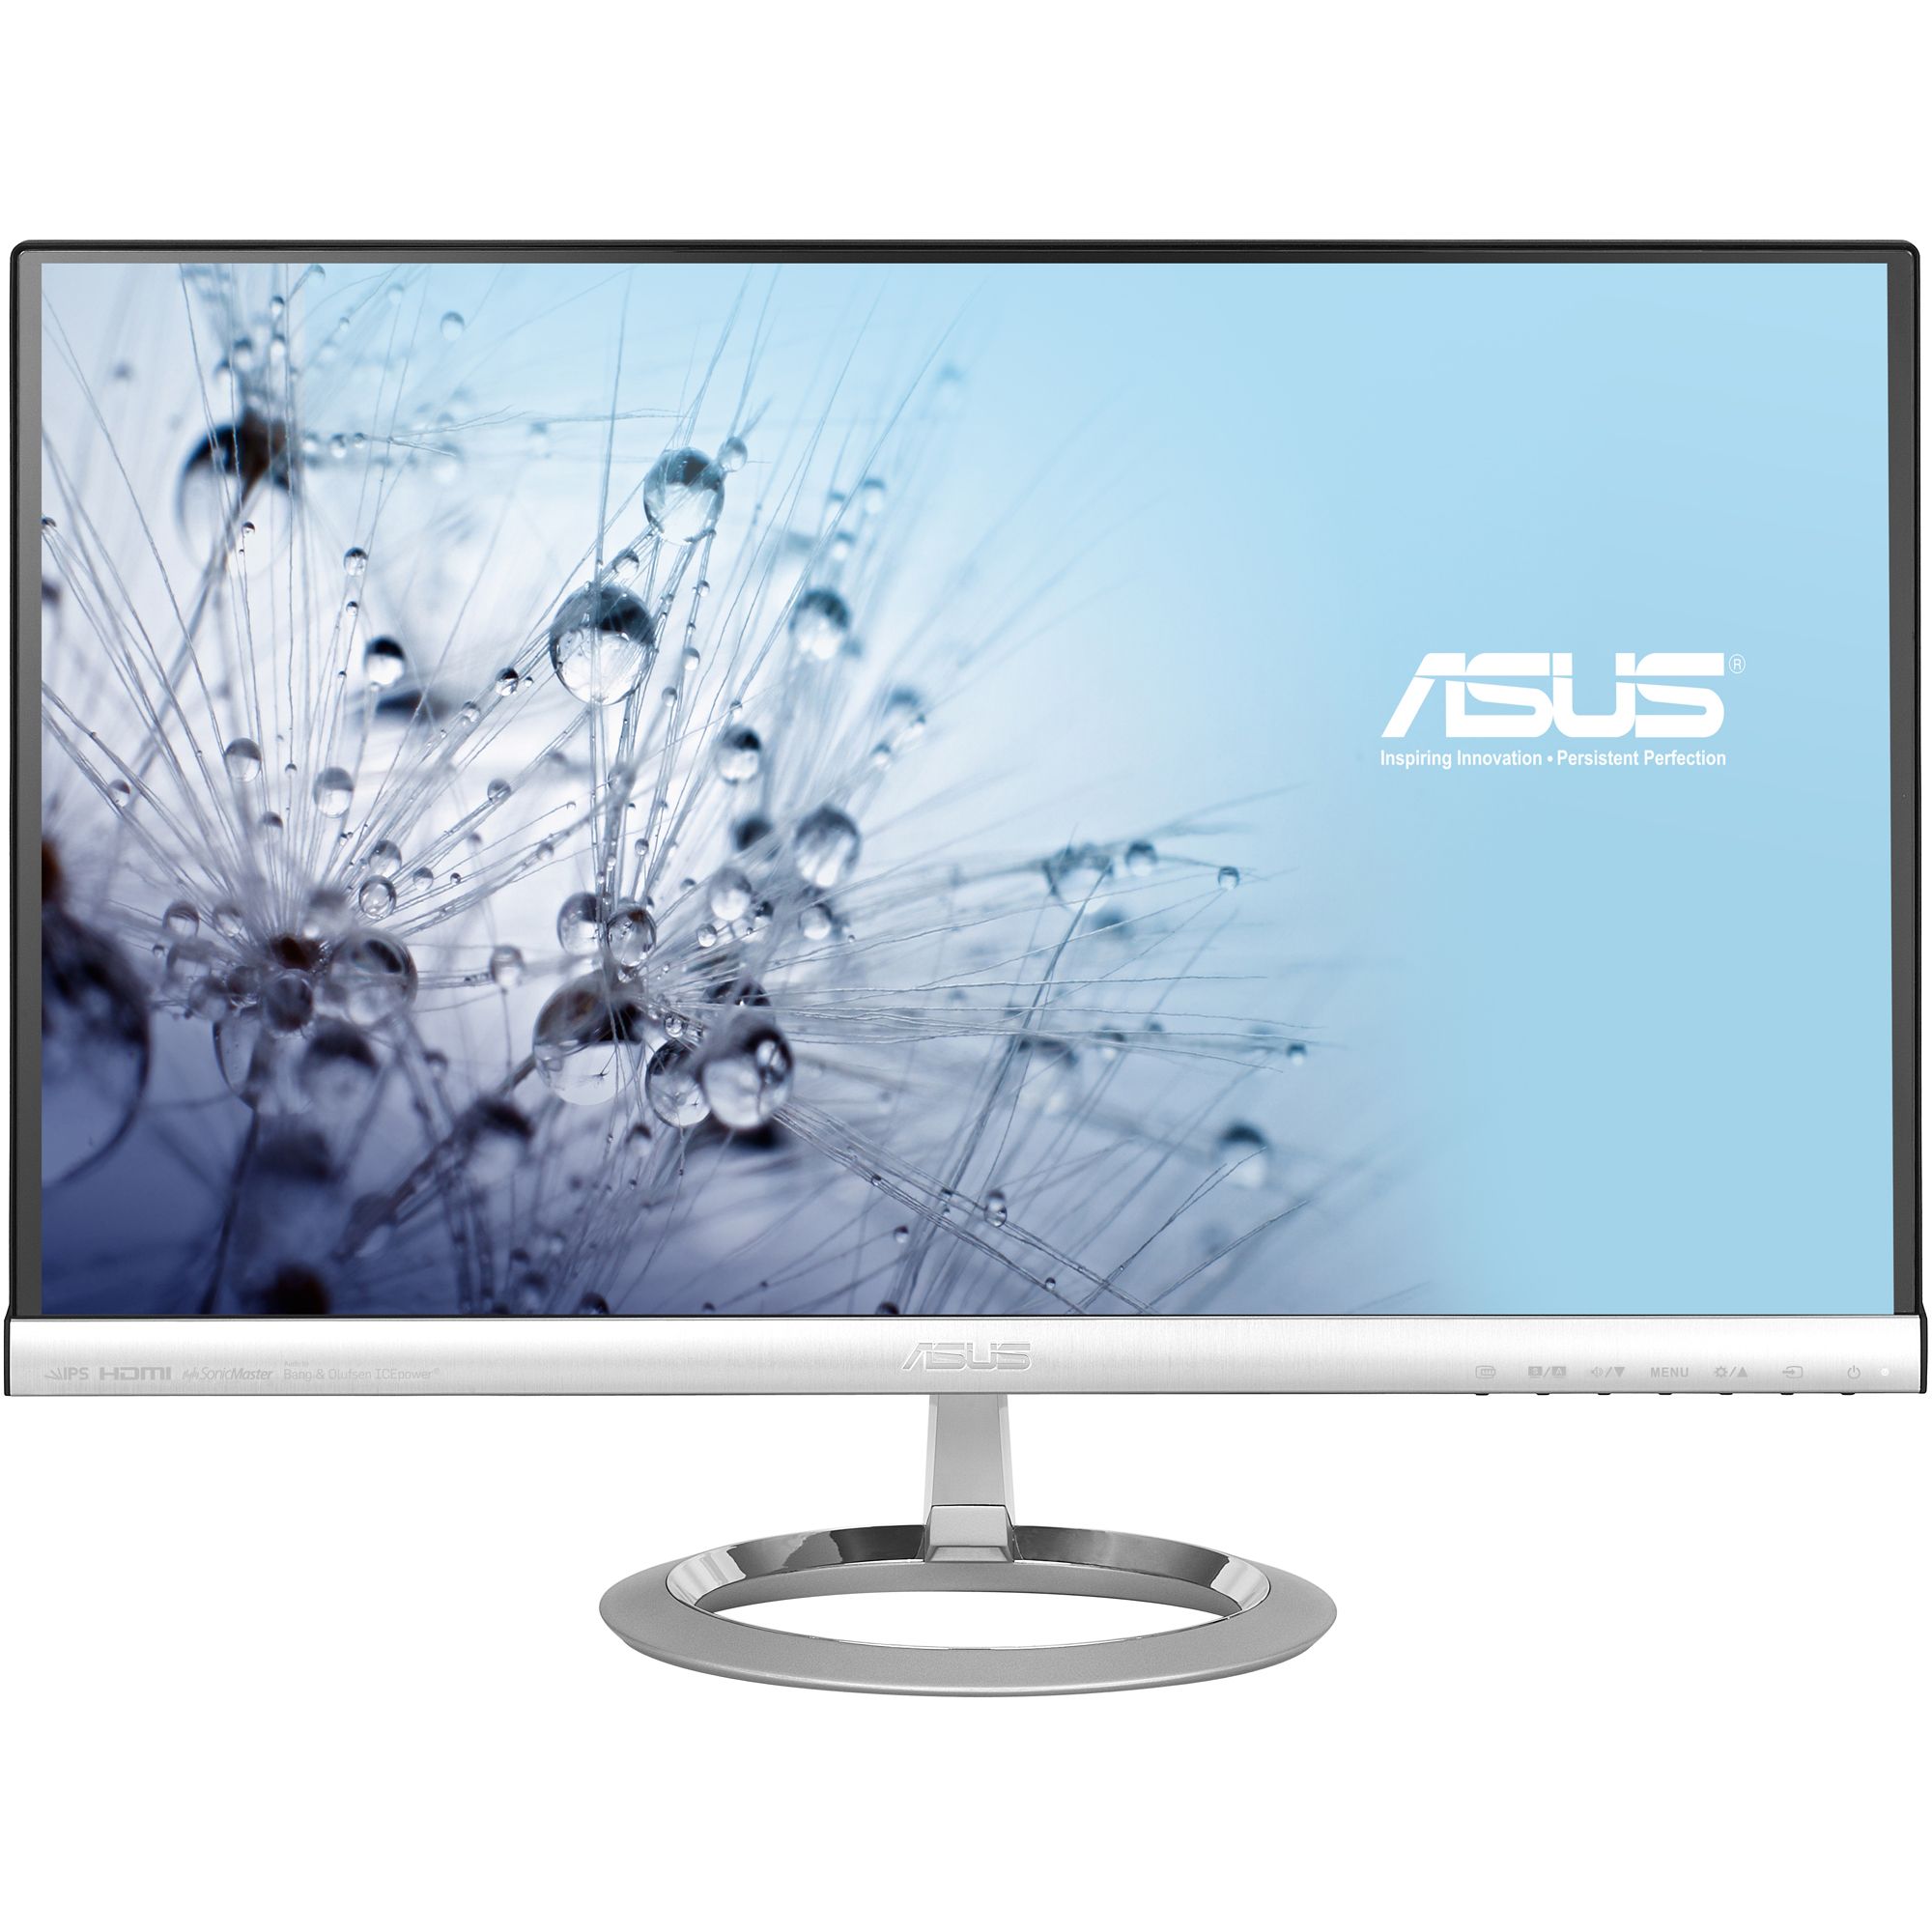  Monitor LED Asus MX239H, 23", Full HD, Argintiu/Negru 